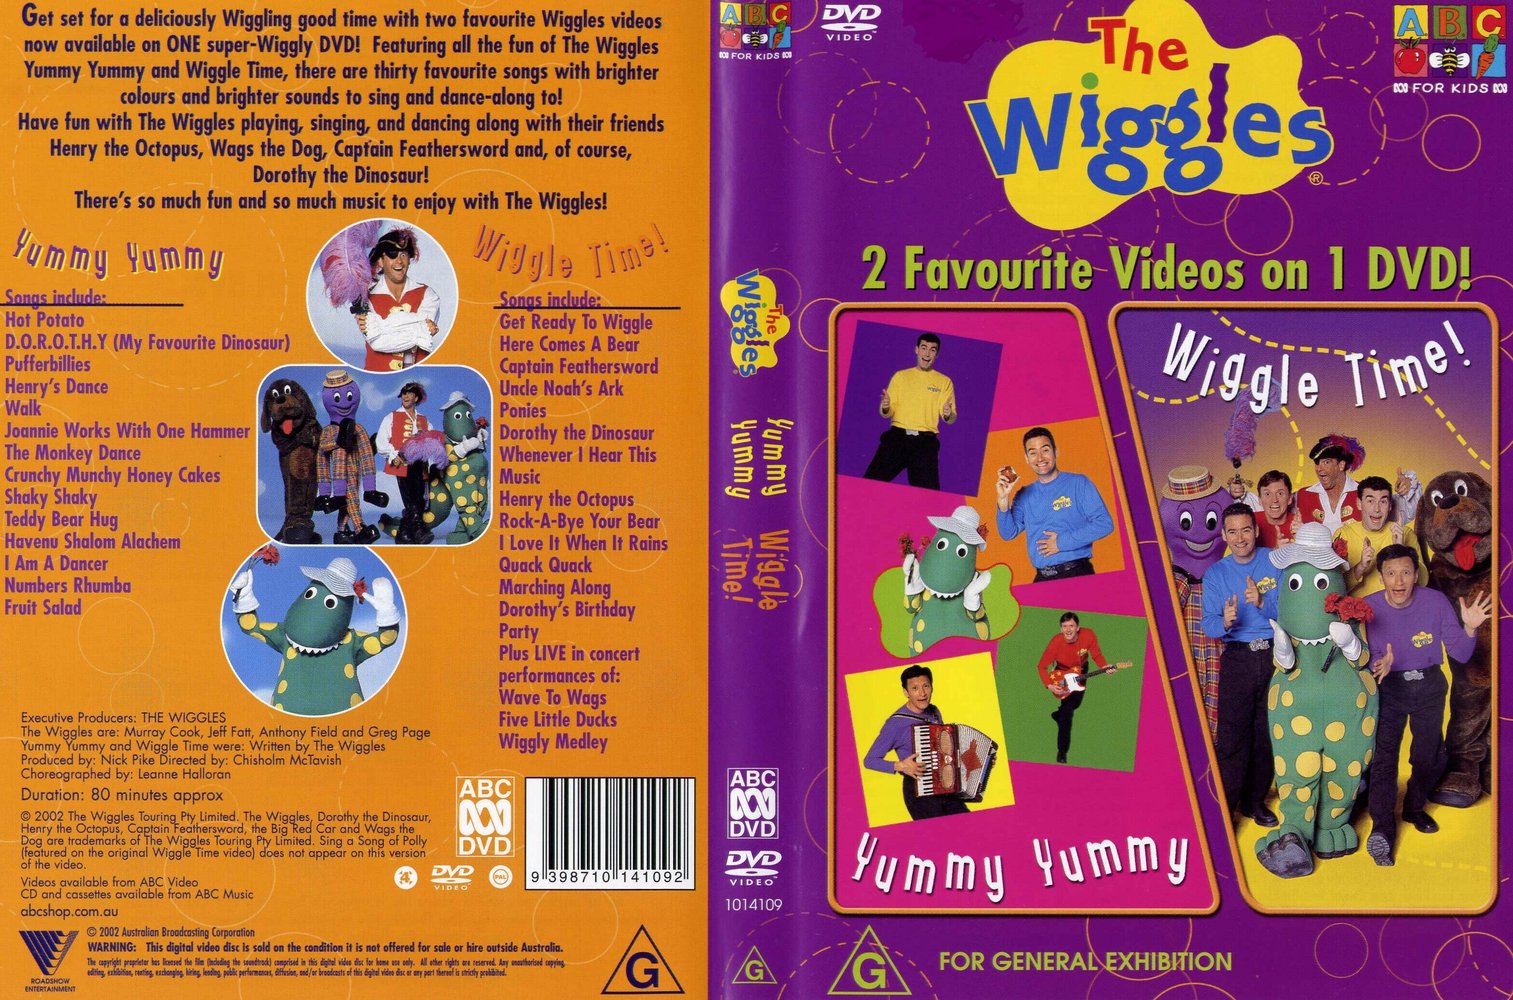 The wiggles yummy yummy 1998.